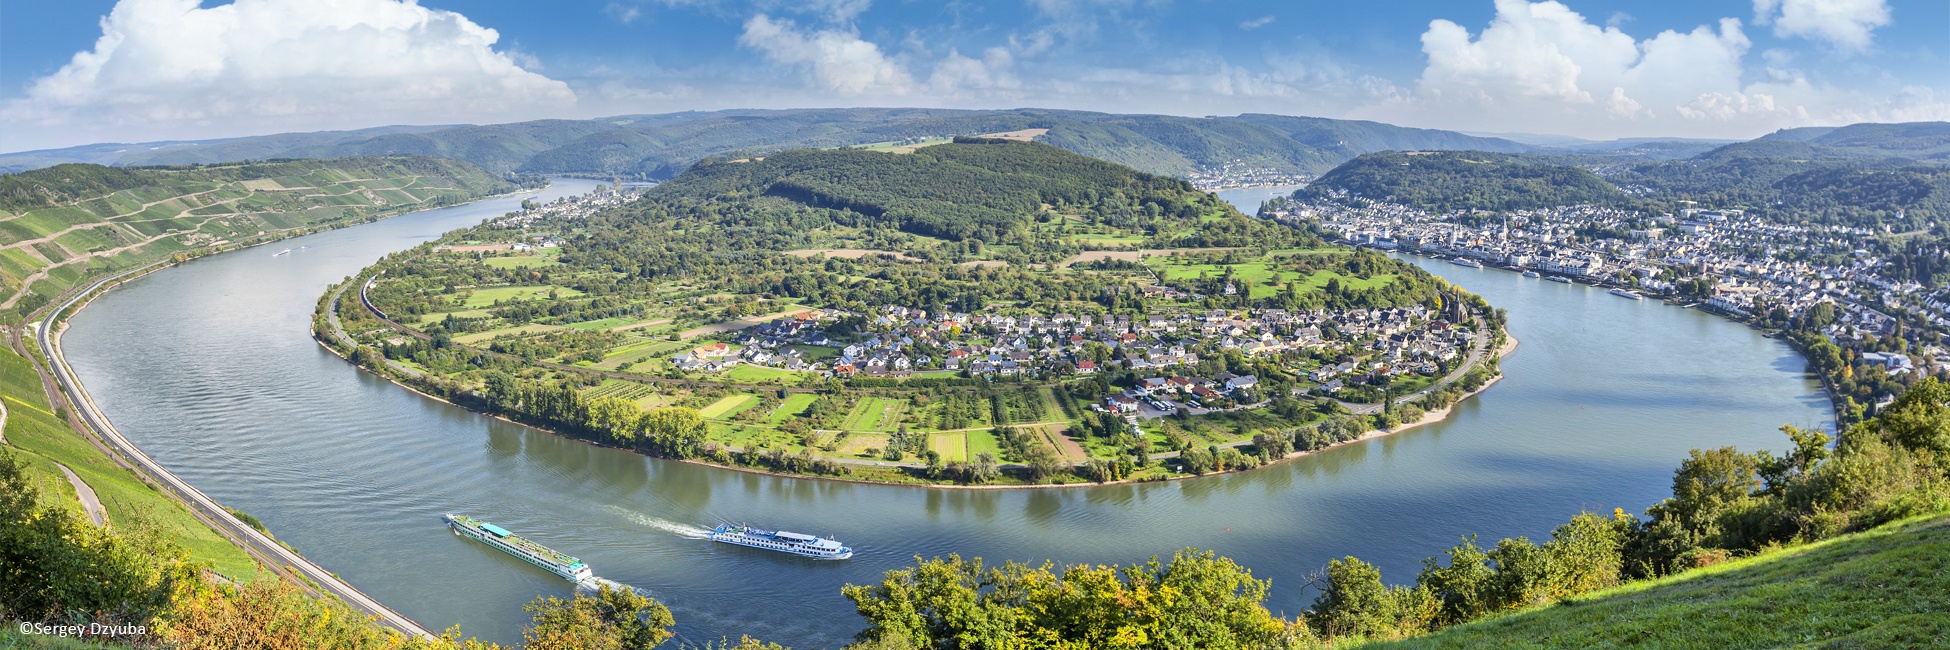 RSB_RAN - Ruta de los 4 ríos: los valles del Mosela, del Sarre, del romántico Rin y del Neckar